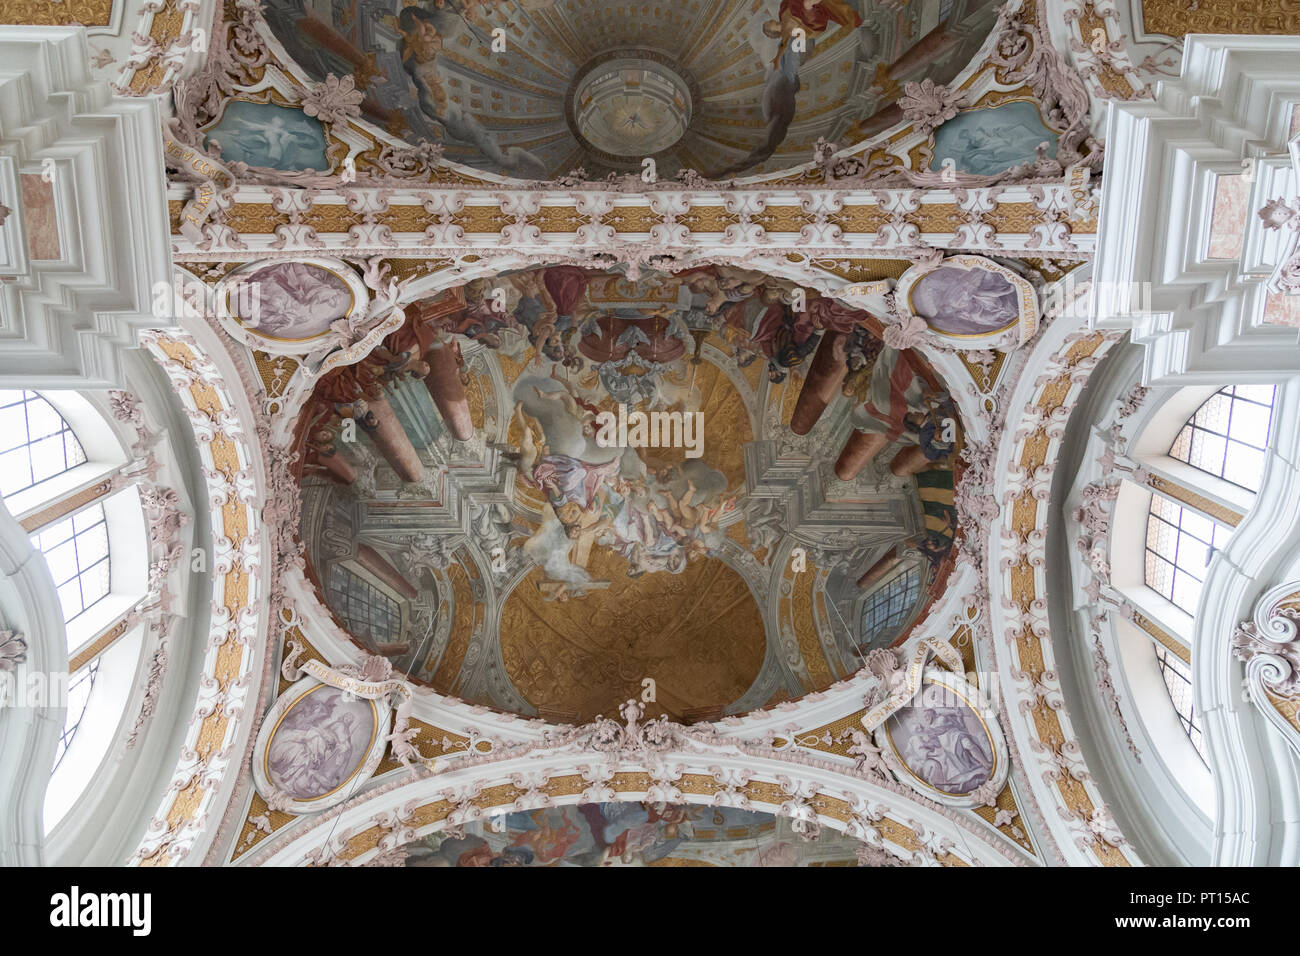 Innsbruck, Autriche - juin 8, 2018 : la peinture de plafond à l'intérieur de la cathédrale d'Innsbruck Banque D'Images